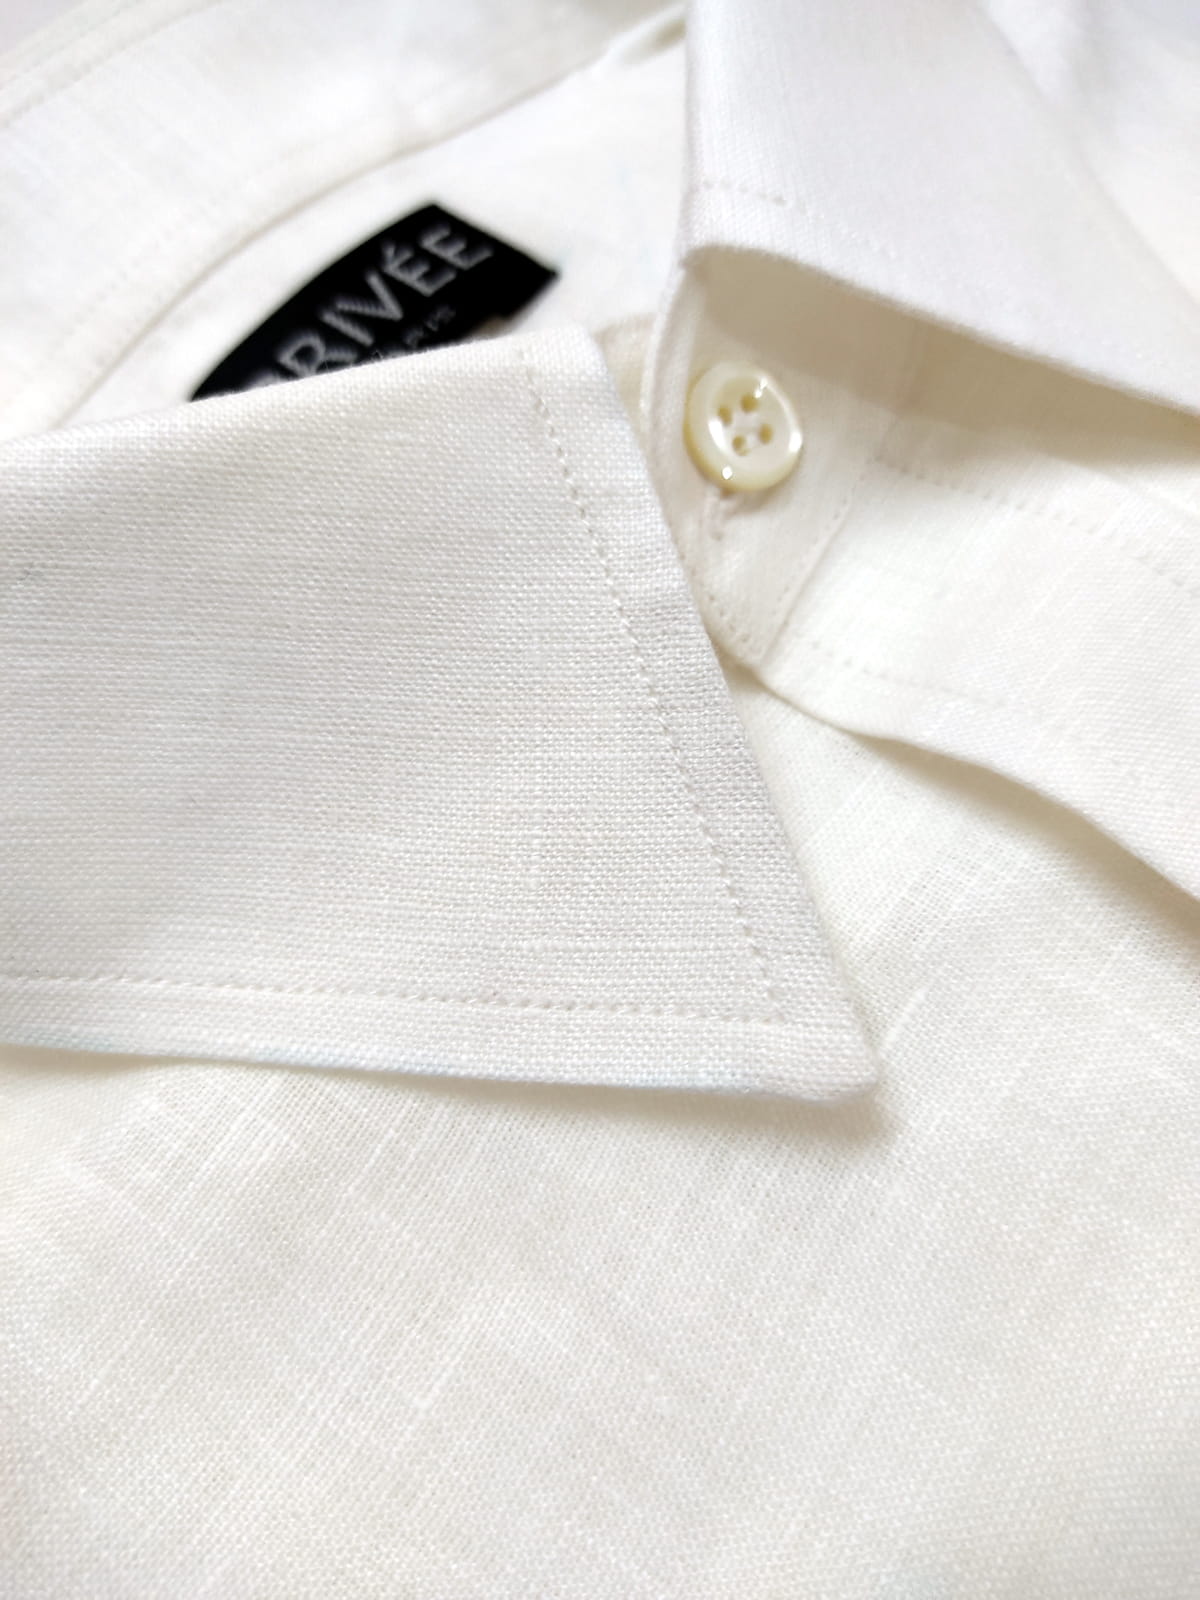 White Linen Shirts India